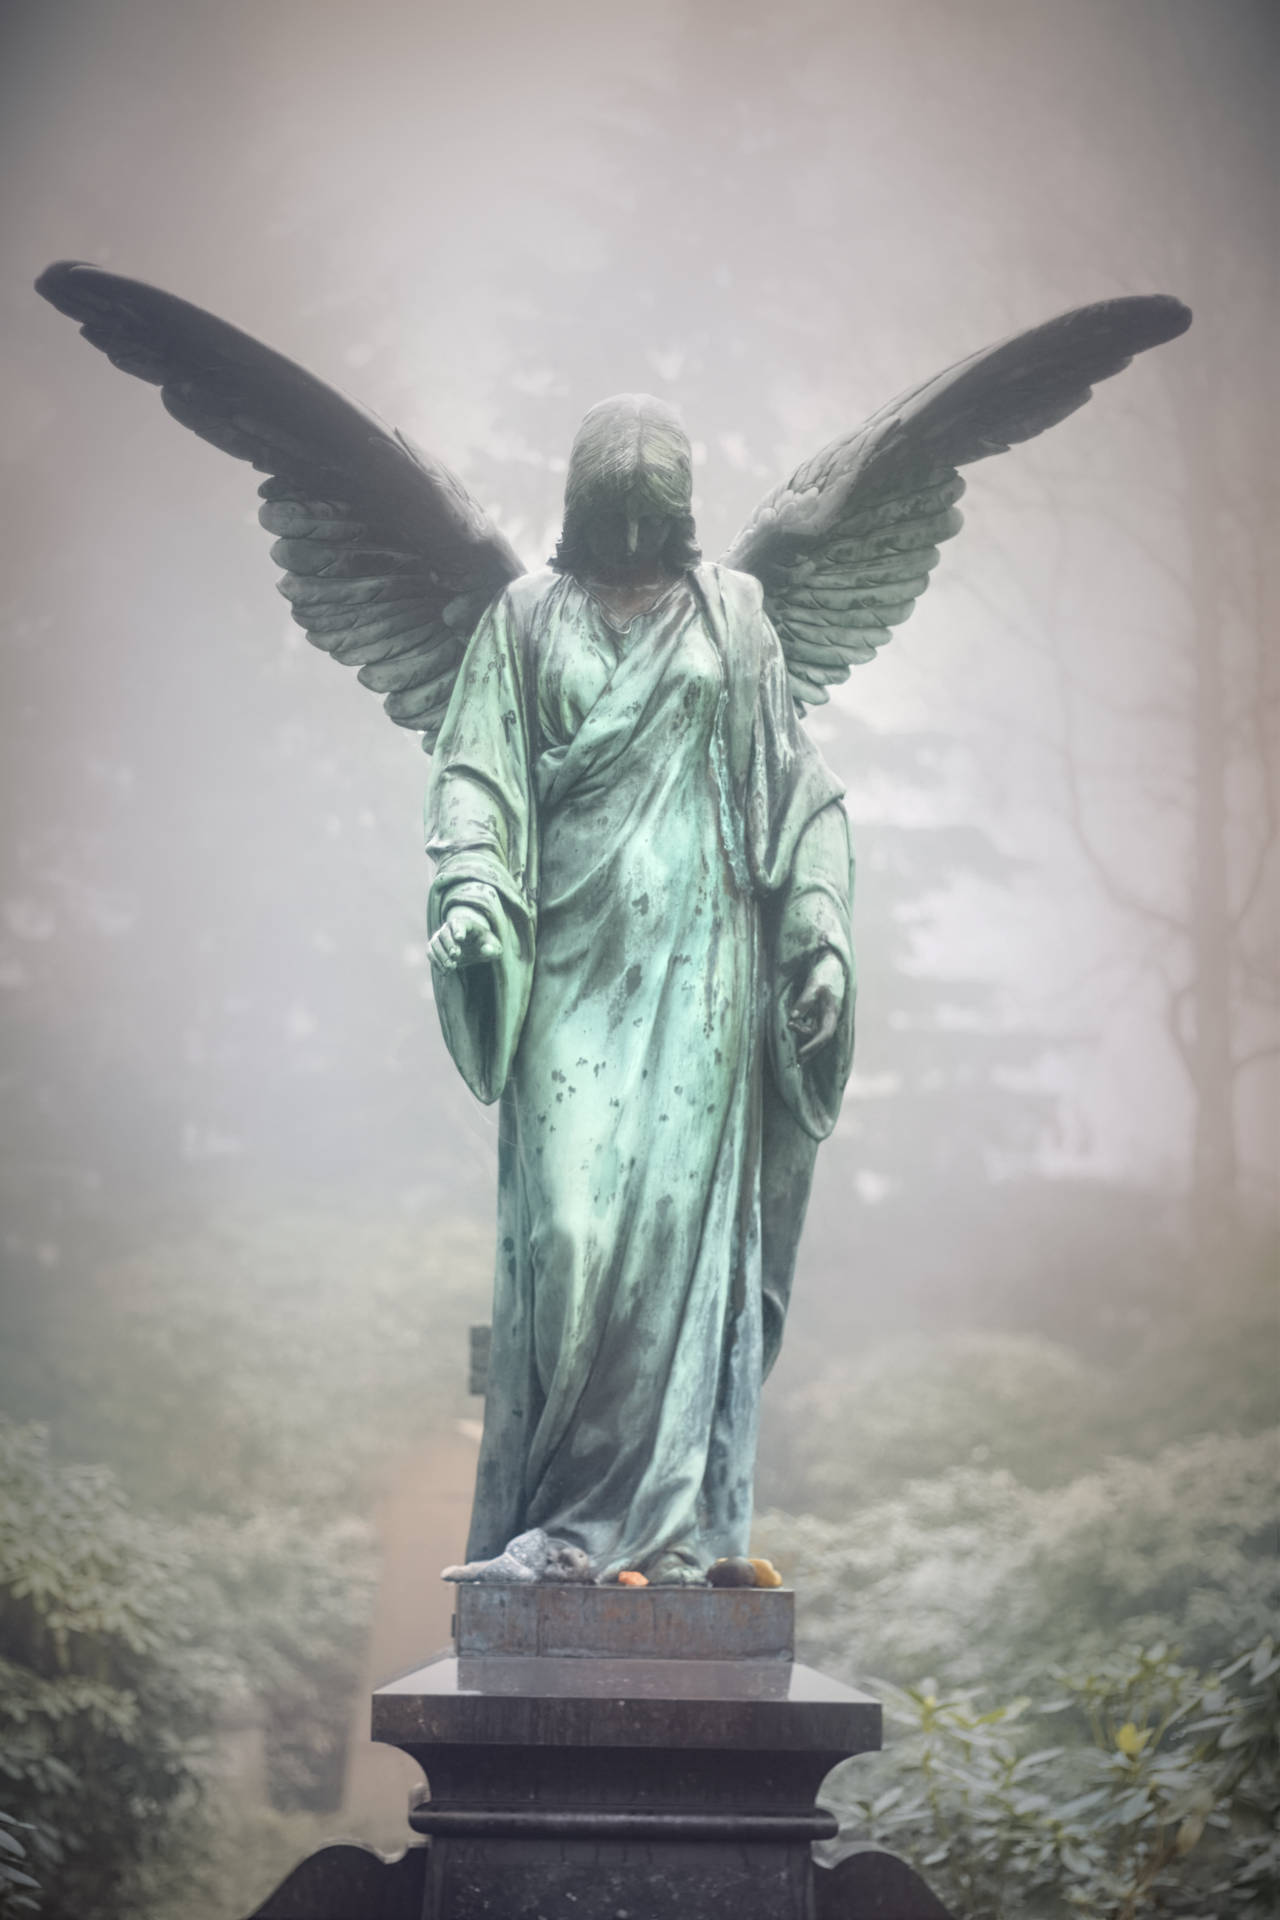 Tealblue Angel Statue På Svenska Är 